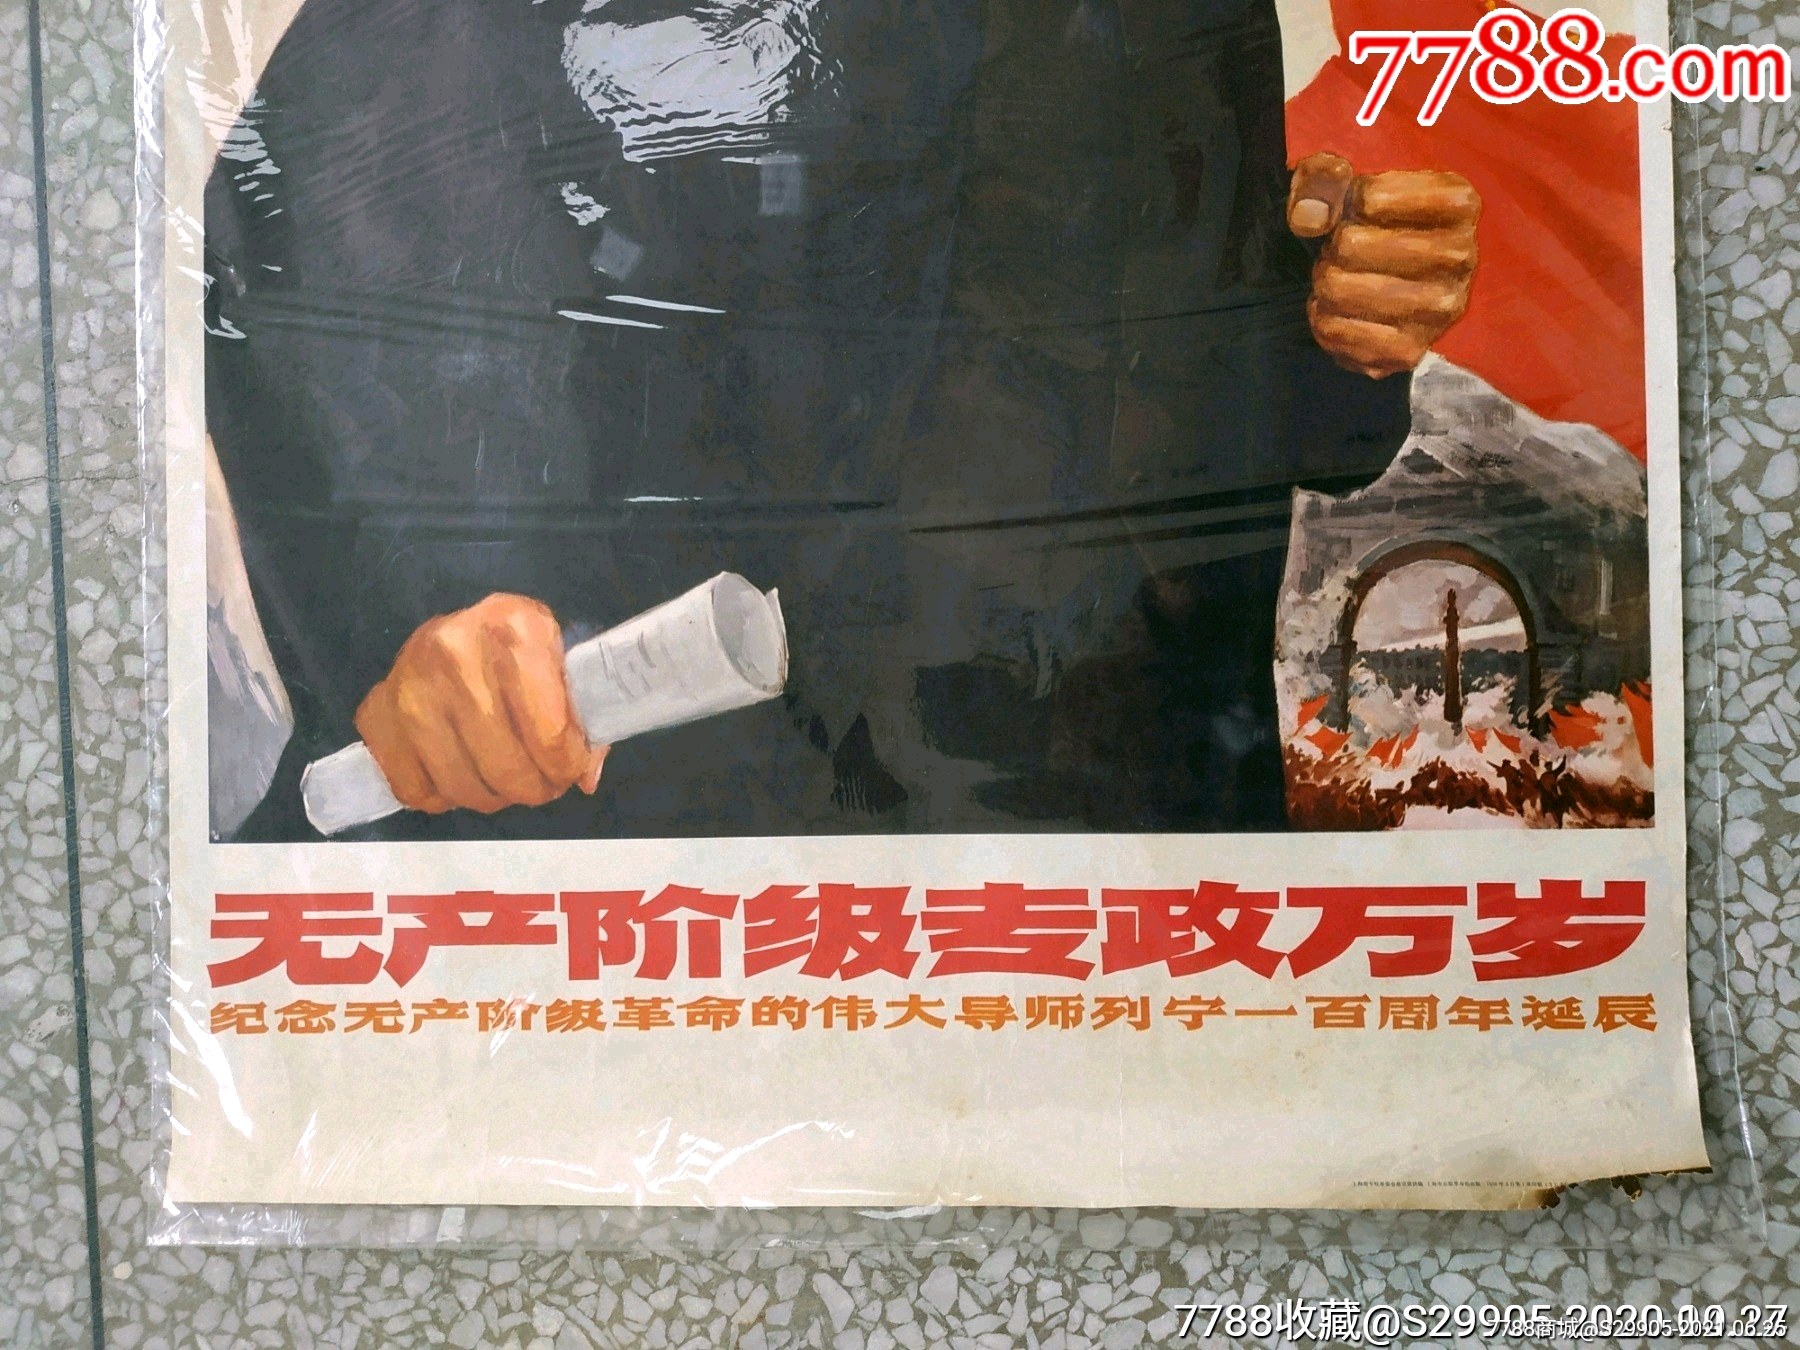 文革时期:水粉画印制的列宁《无产阶级专政万岁》宣传画存世较少